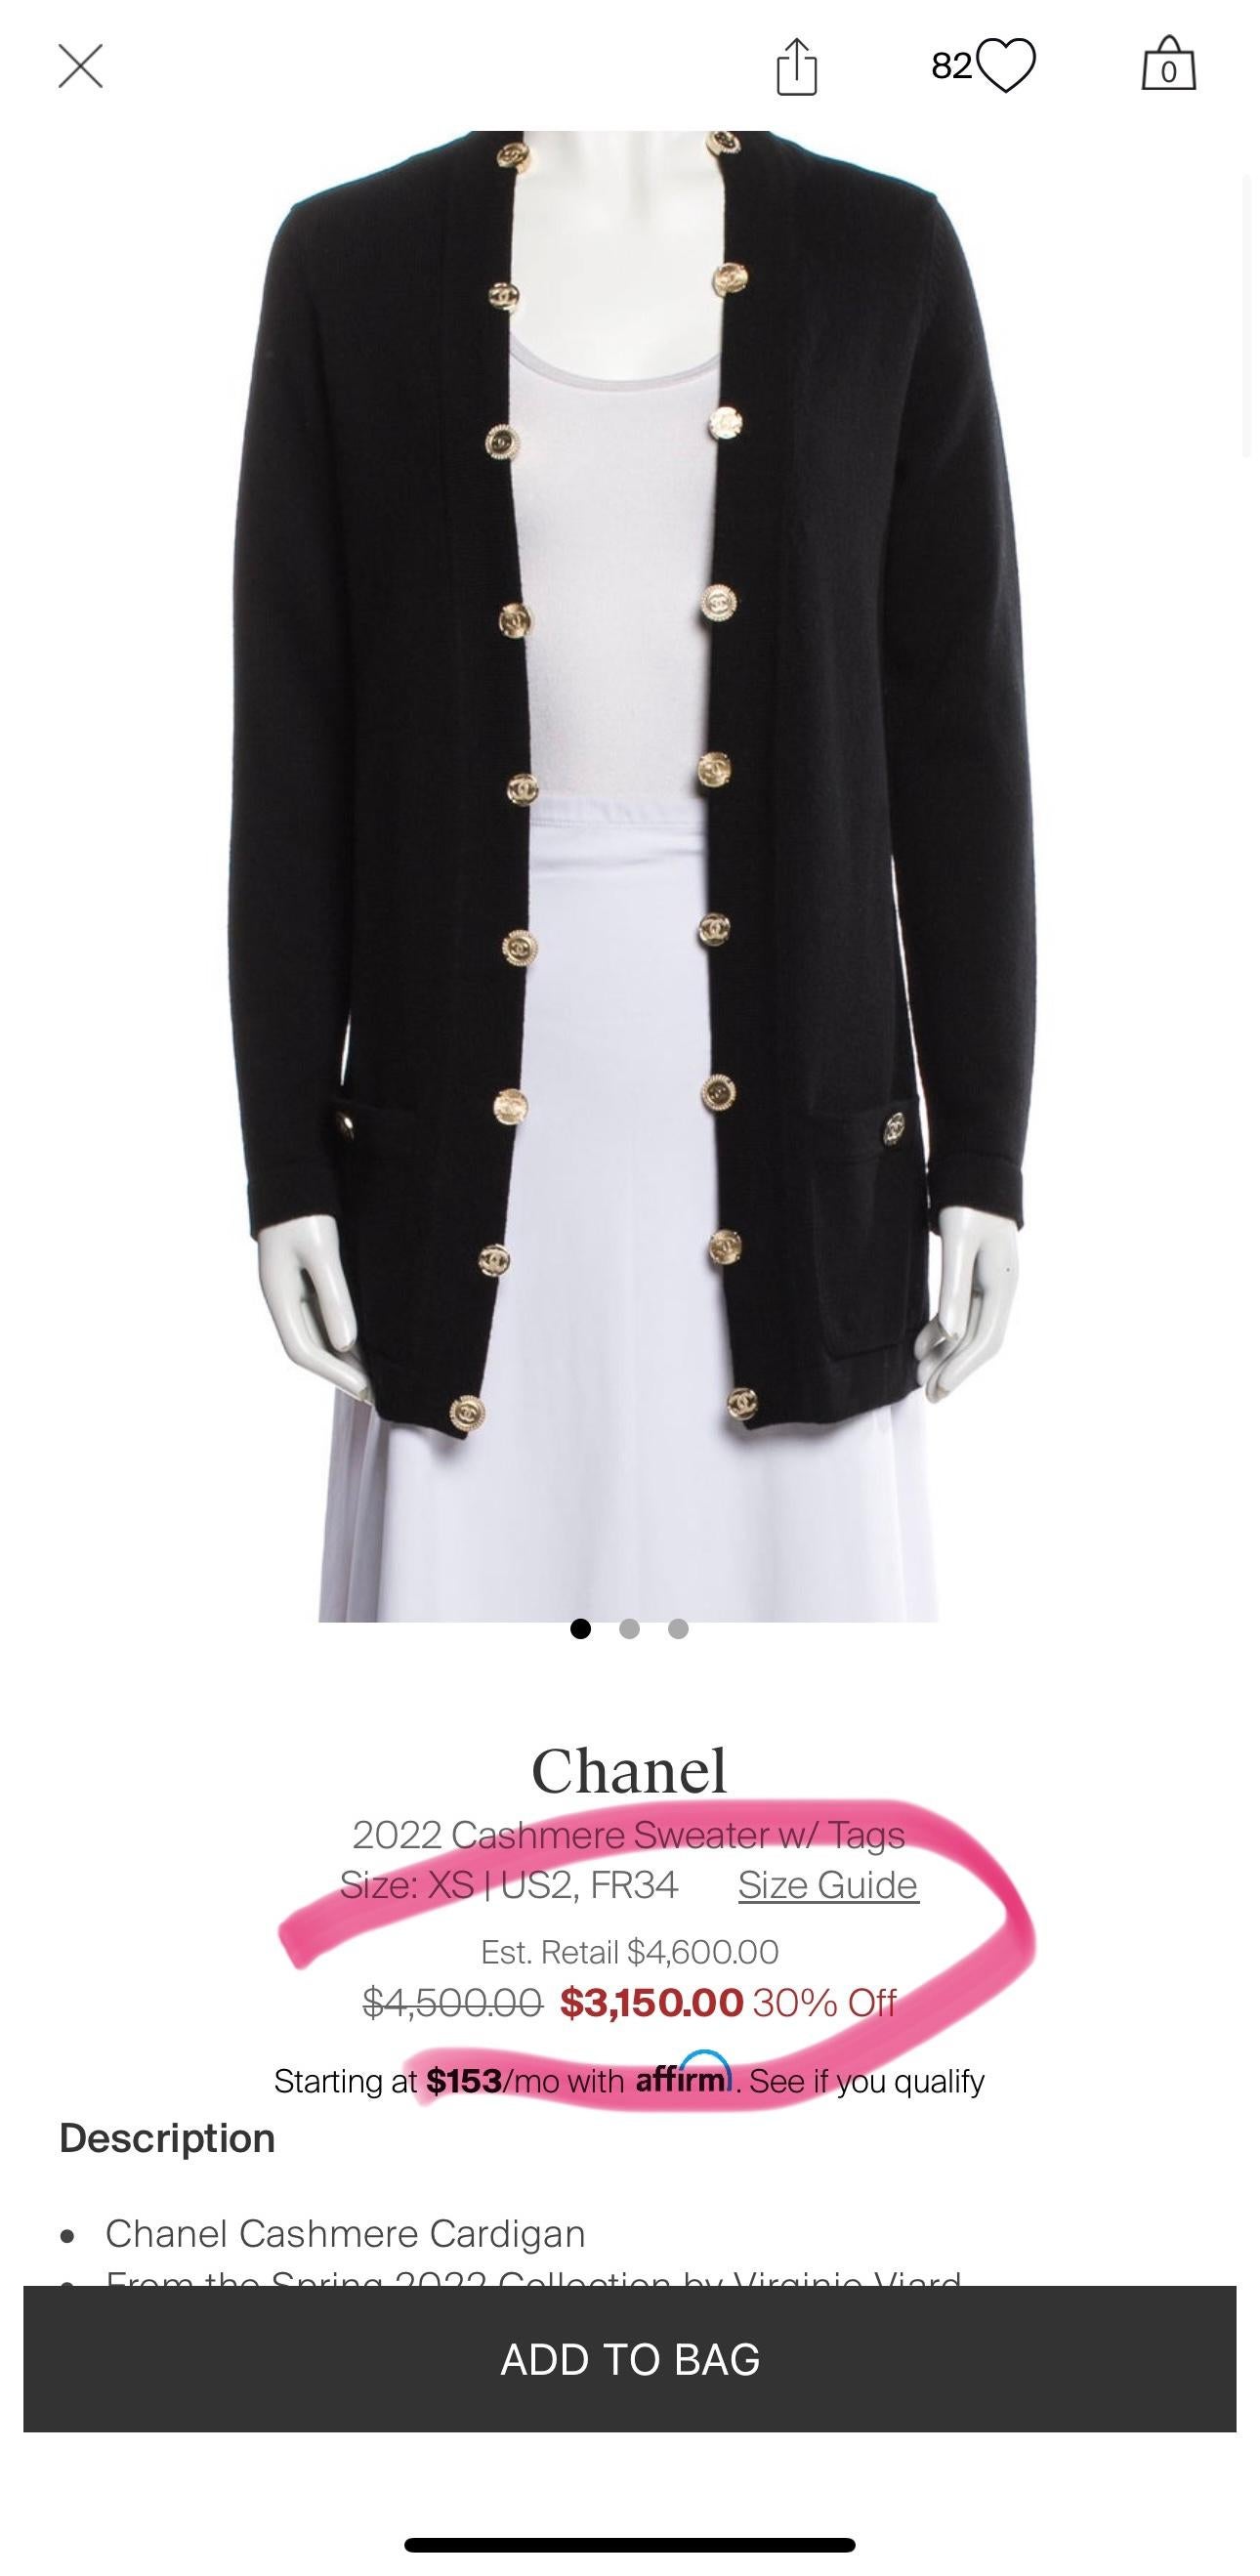 Superbe cardigan en cachemire noir de Chanel avec plusieurs boutons portant le logo CC : de la Collectional Printemps 2022 par Mme Virginie Viard.
Taille 34 FR. Jamais porté.